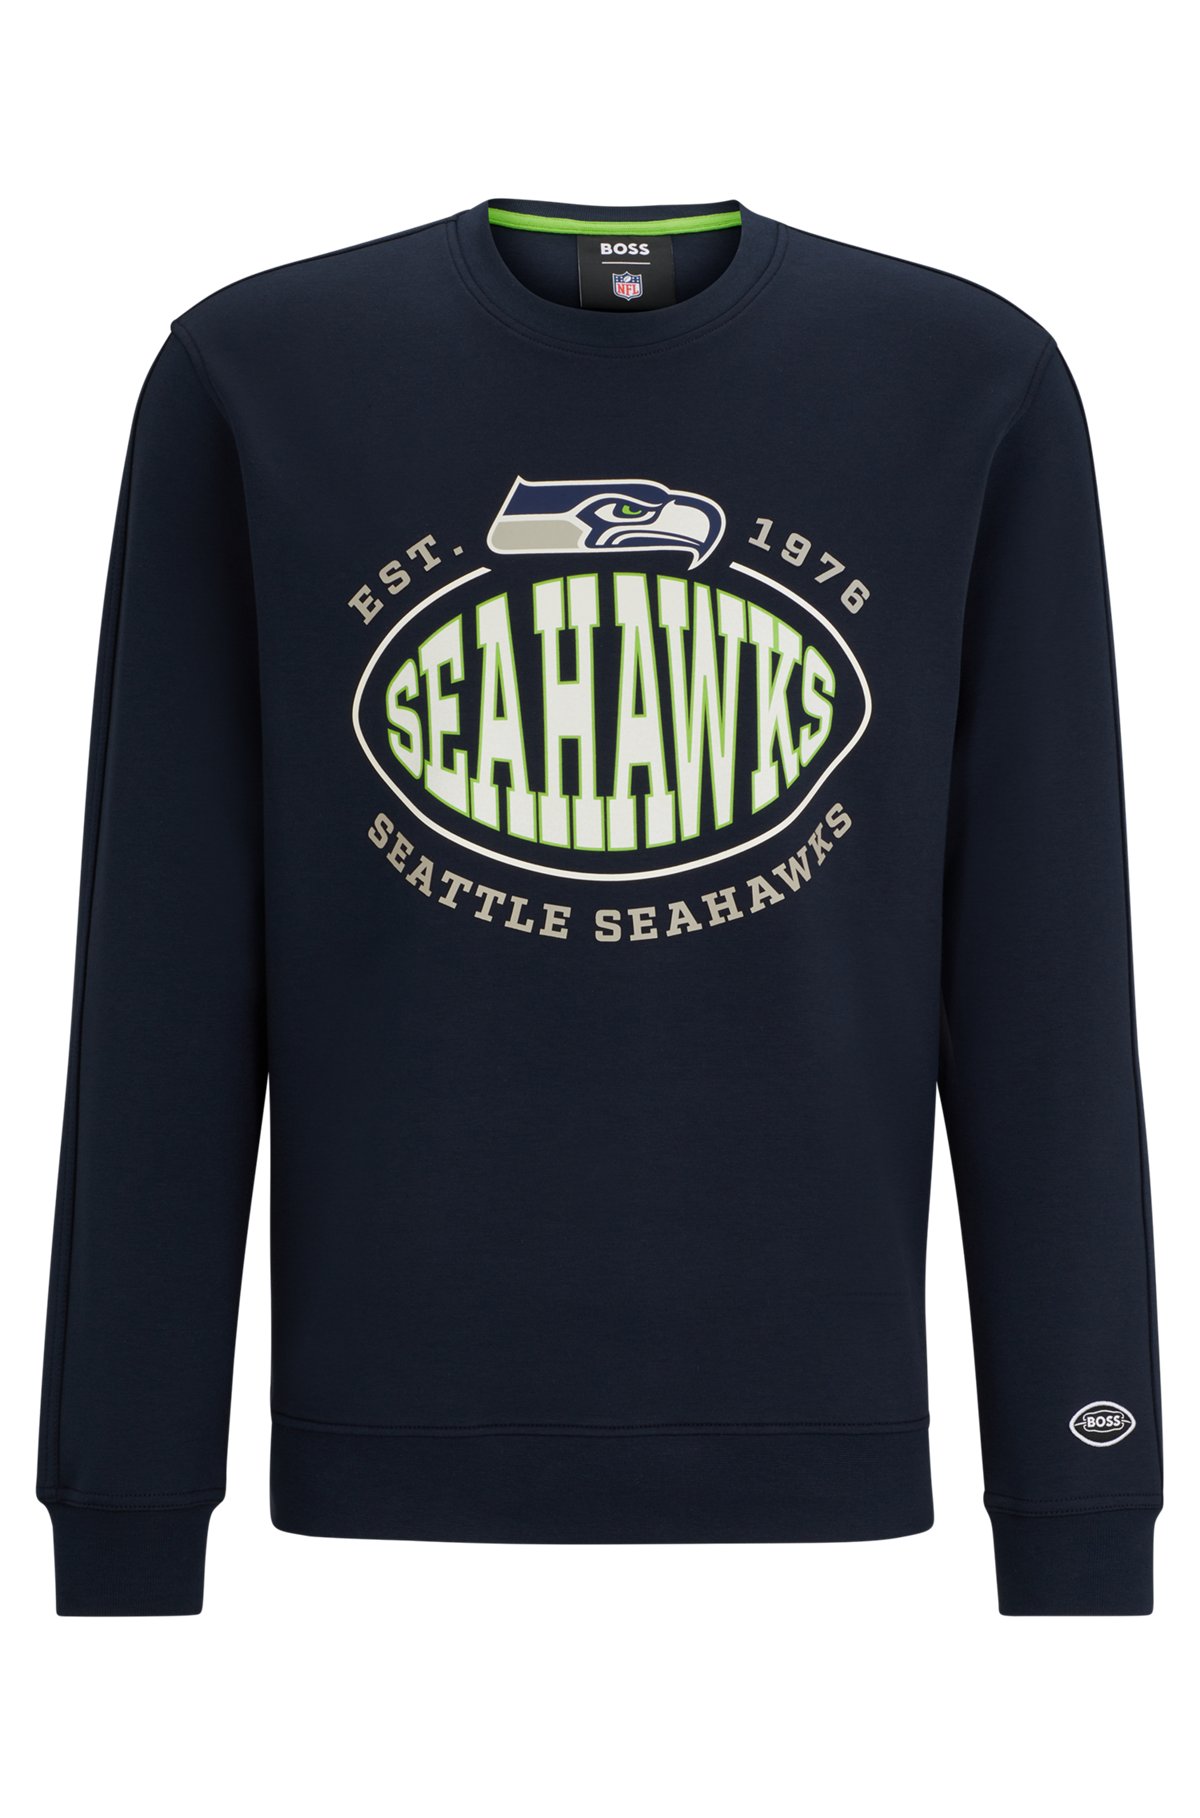 Sweat en coton mélangé BOSS x NFL avec logos du partenariat, Seahawks